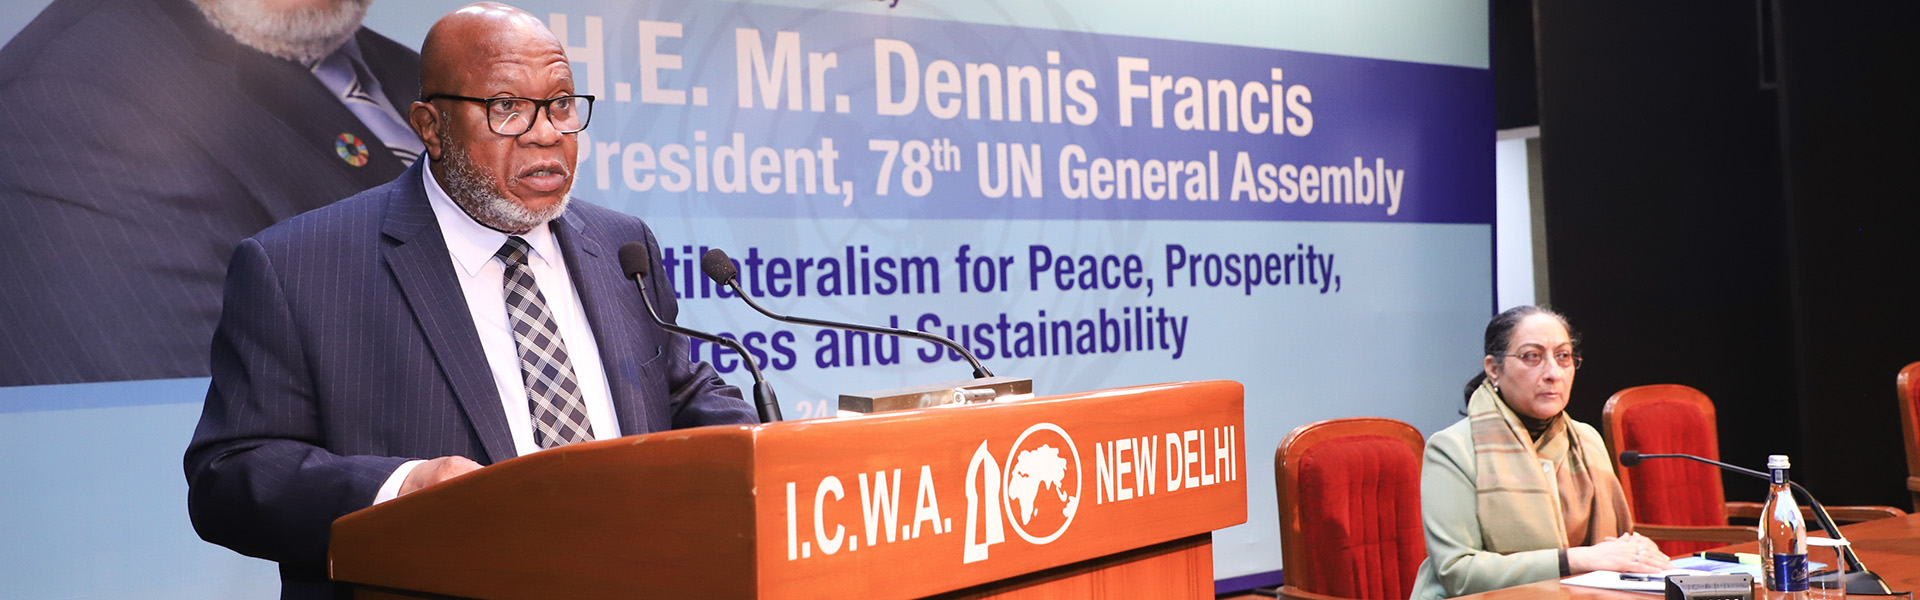 महामहिम श्री डेनिस फ्रांसिस, अध्यक्ष, 78वीं संयुक्त राष्ट्र महासभा (यूएनजीए)ने 24 जनवरी 2024 को सप्रू हाउस में  'शांति, समृद्धि, प्रगति और स्थिरता के लिए बहुपक्षवाद' पर 47वां सप्रू हाउस व्याख्यान दिया।